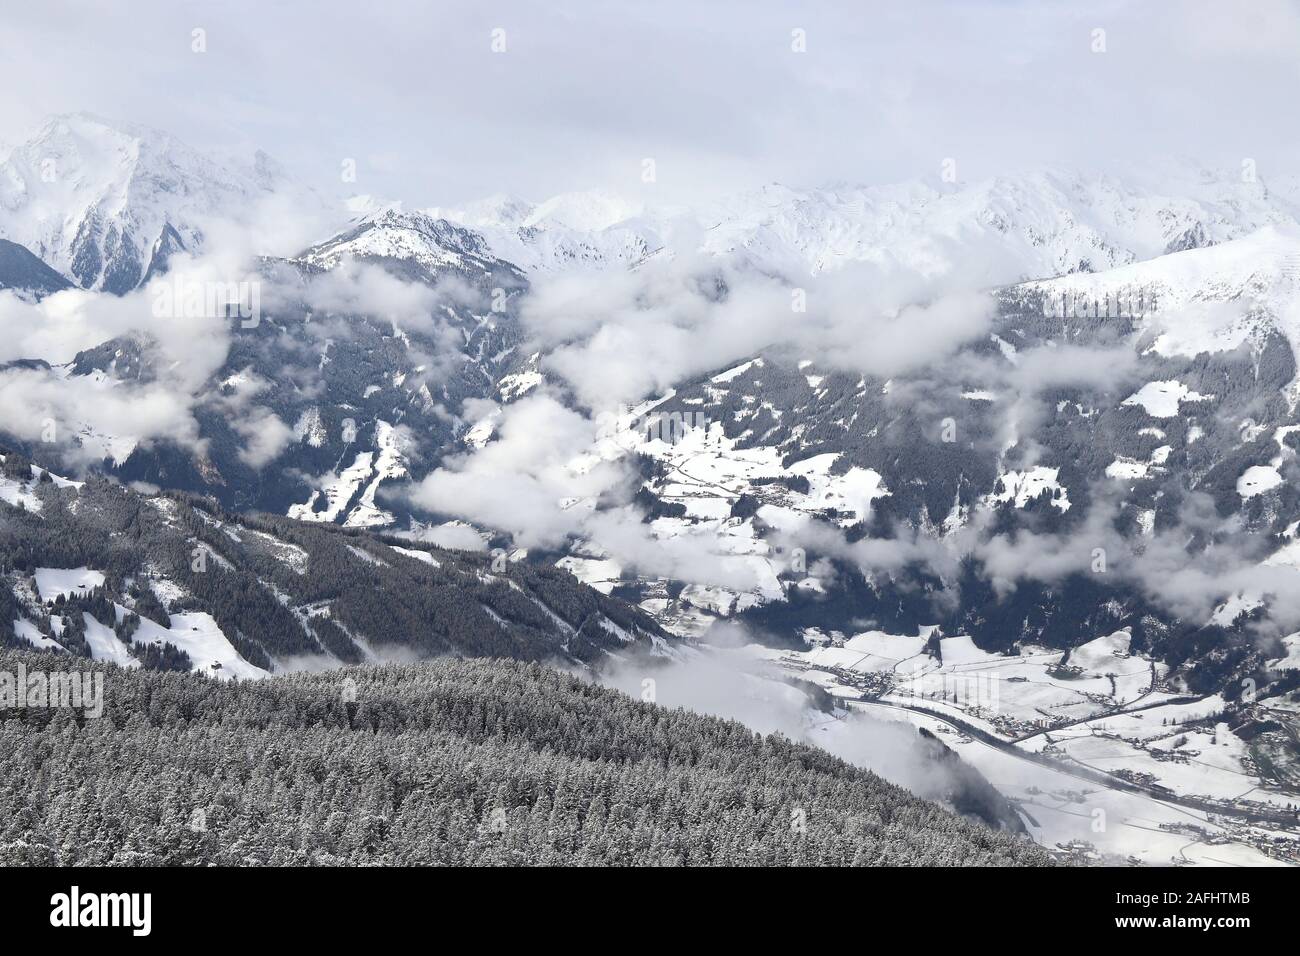 Autriche - Zell am Ziller, le Tyrol. Alpes centrale autrichienne. Banque D'Images